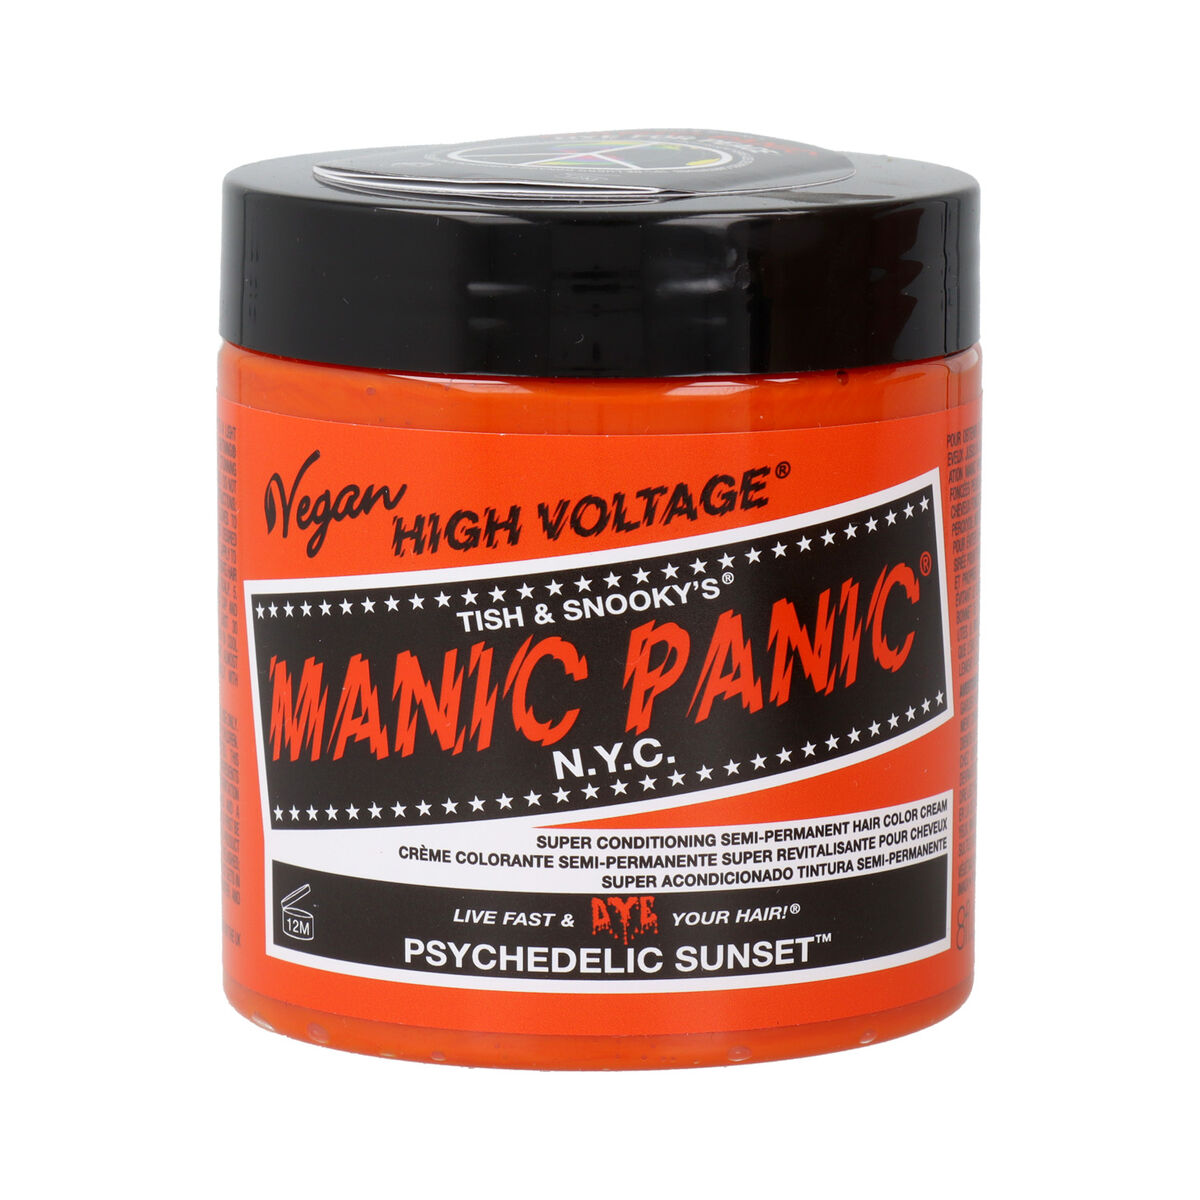 Pusiau laikinas dažas Manic Panic Panic High Portocaliu Vegan (237 ml)